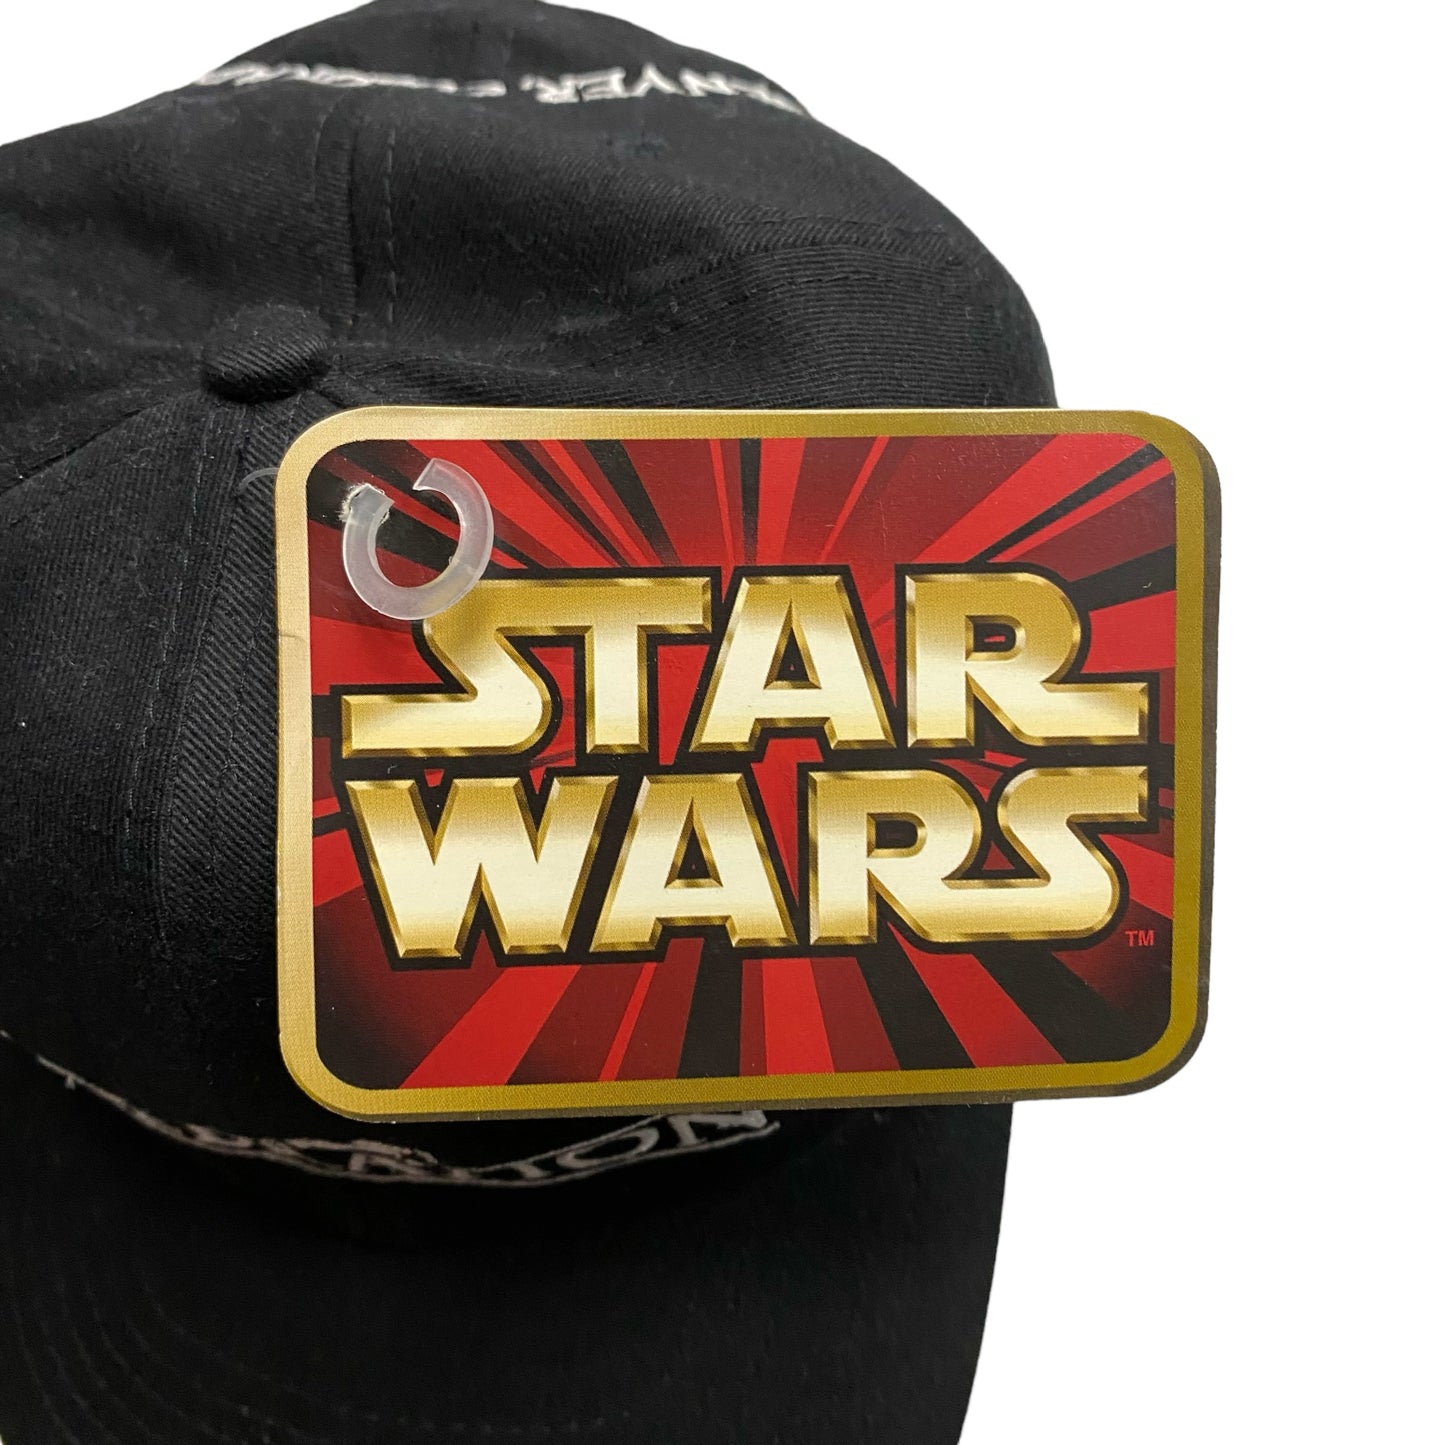 Vintage Star Wars Celebration Black Strap Back Hat (New with Tags)